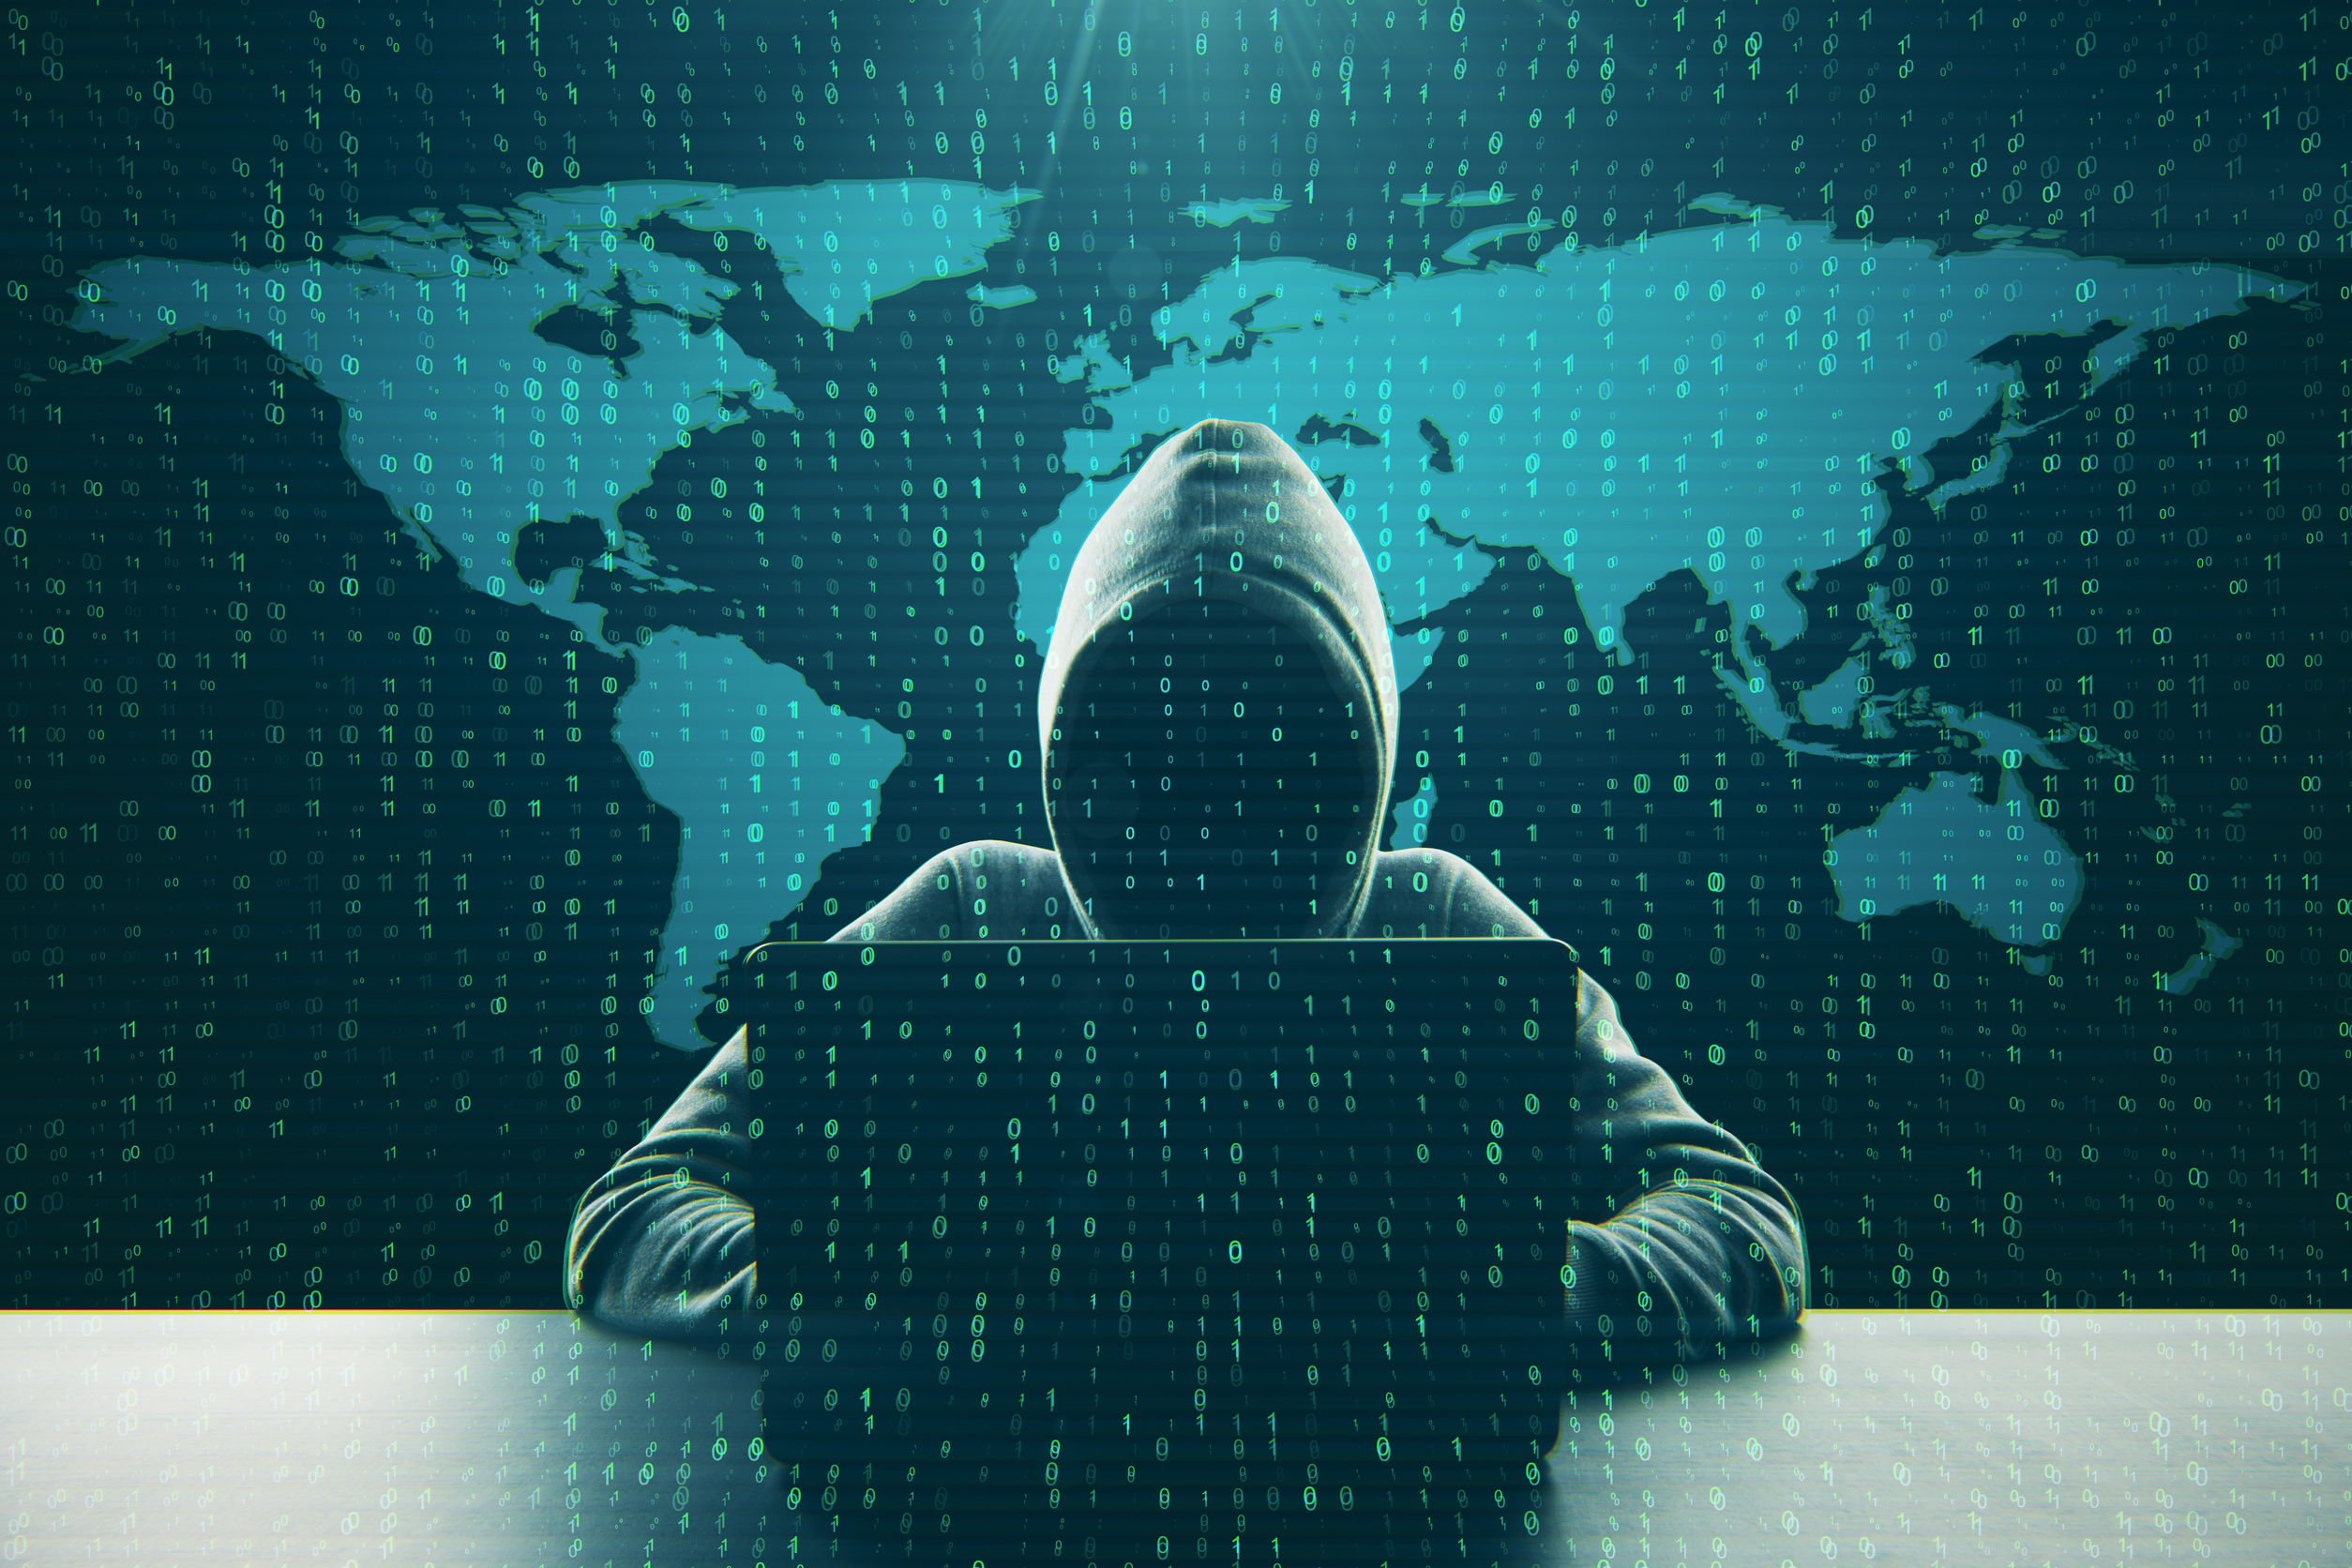 hacker-hide-in-compromised-queensland-water-supplier-server-netwitz